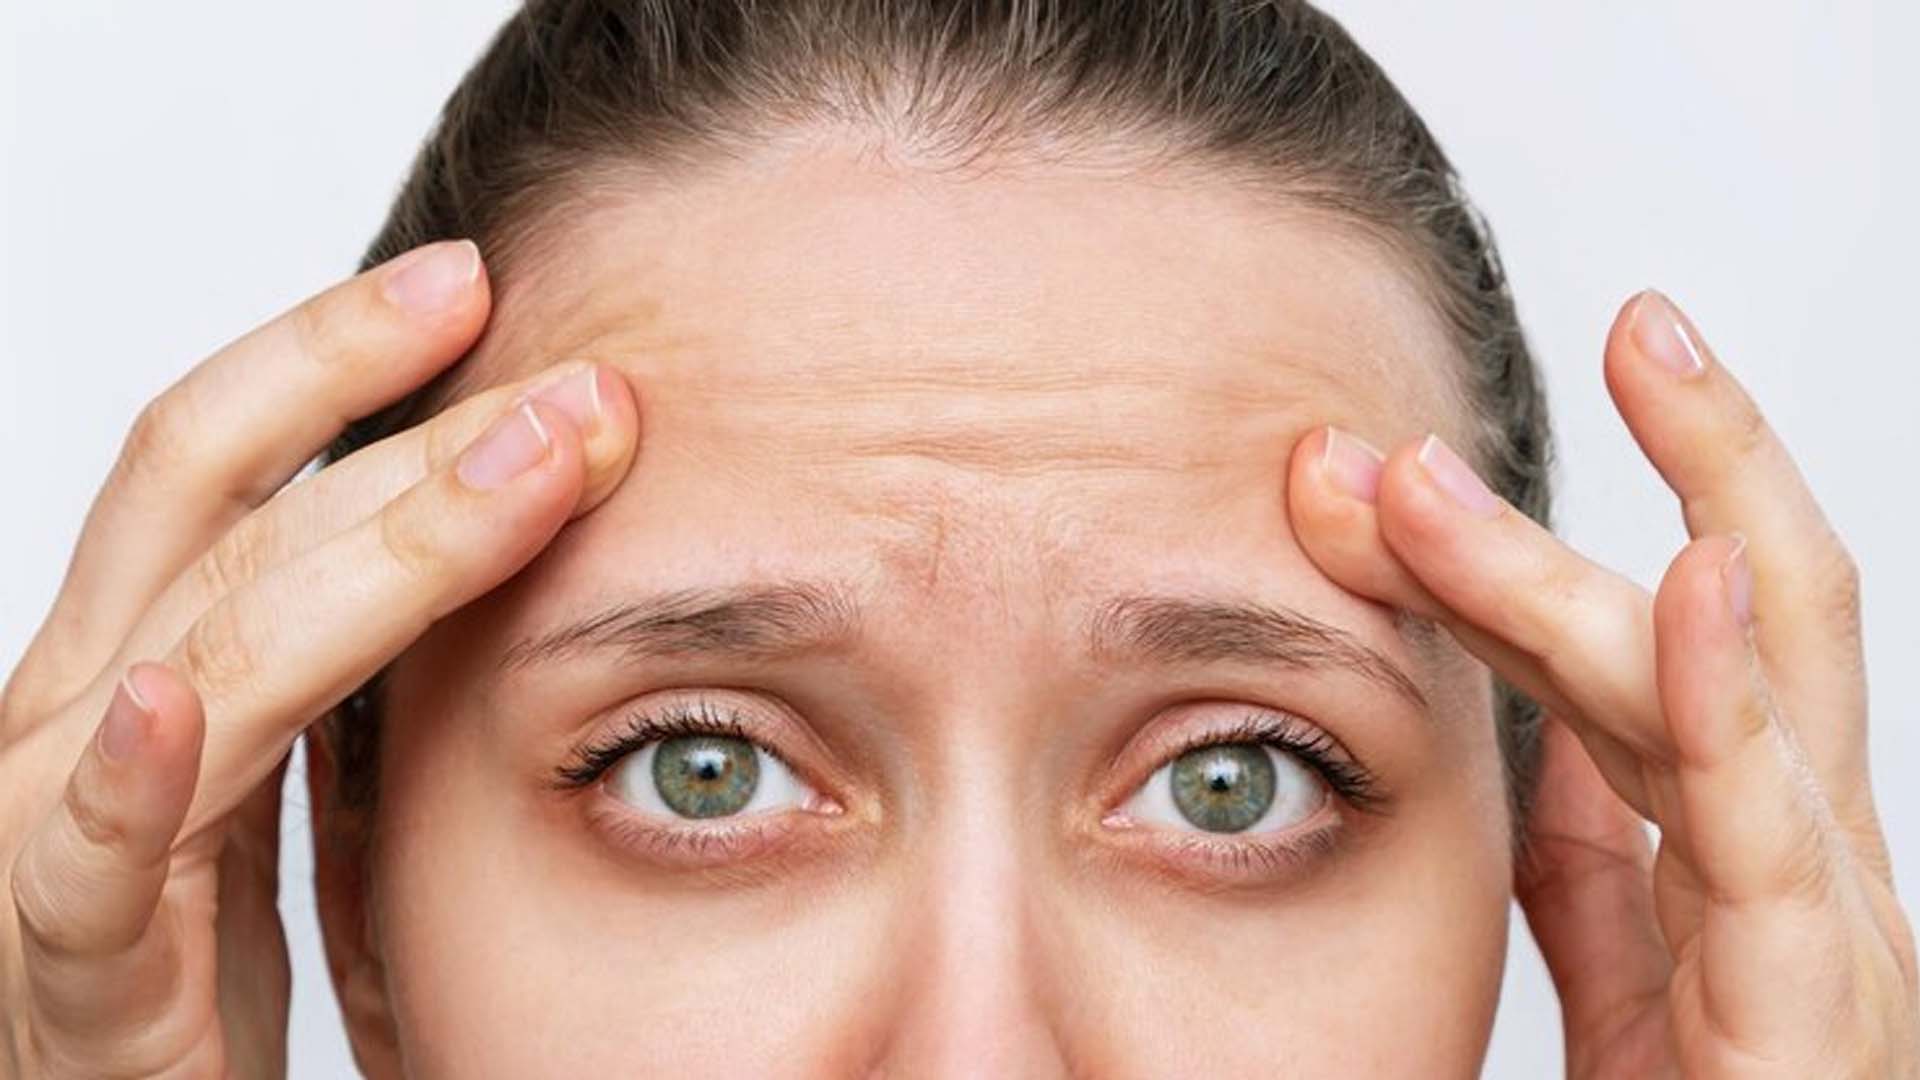 Forehead Wrinkles